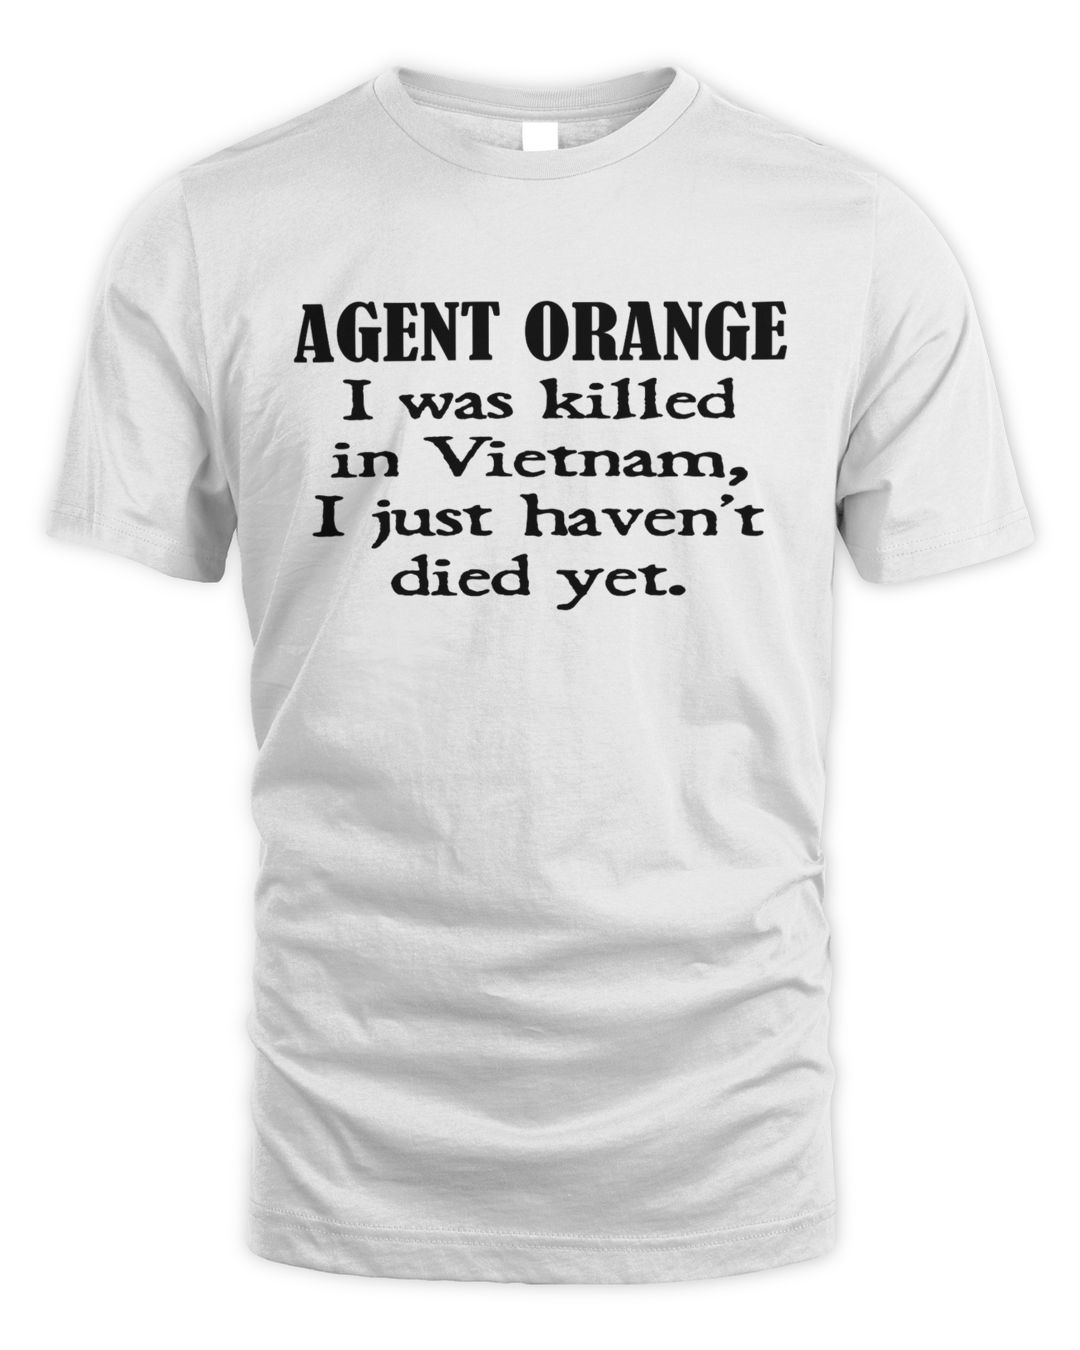 Agent orange I wass killed in Vietnam I just havent died yet shirt